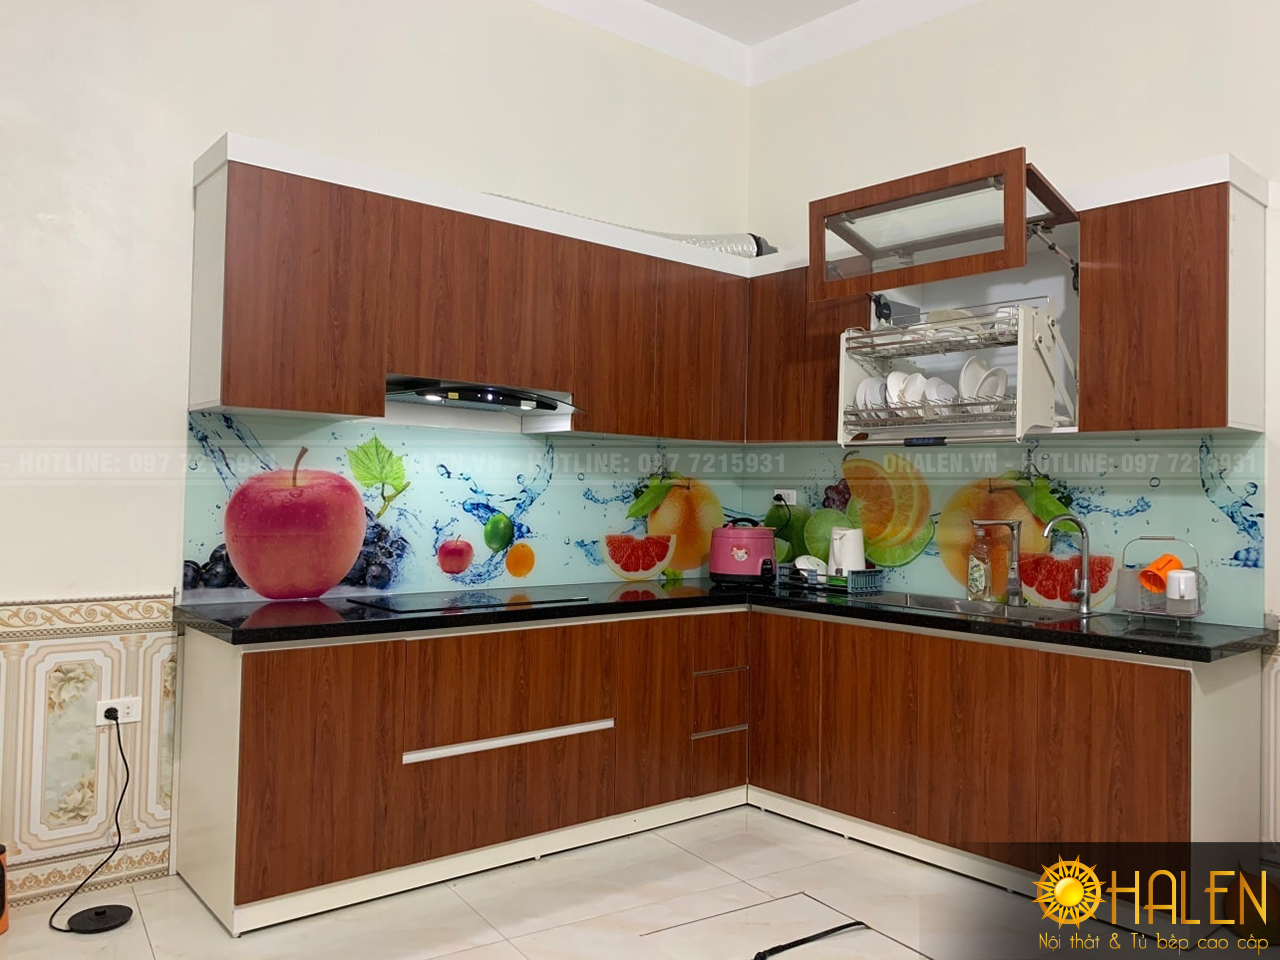 Hình ảnh bộ tủ bếp Melamine vân gỗ màu cánh gián sang trọng kết hợp kính bếp 3D nổi bật